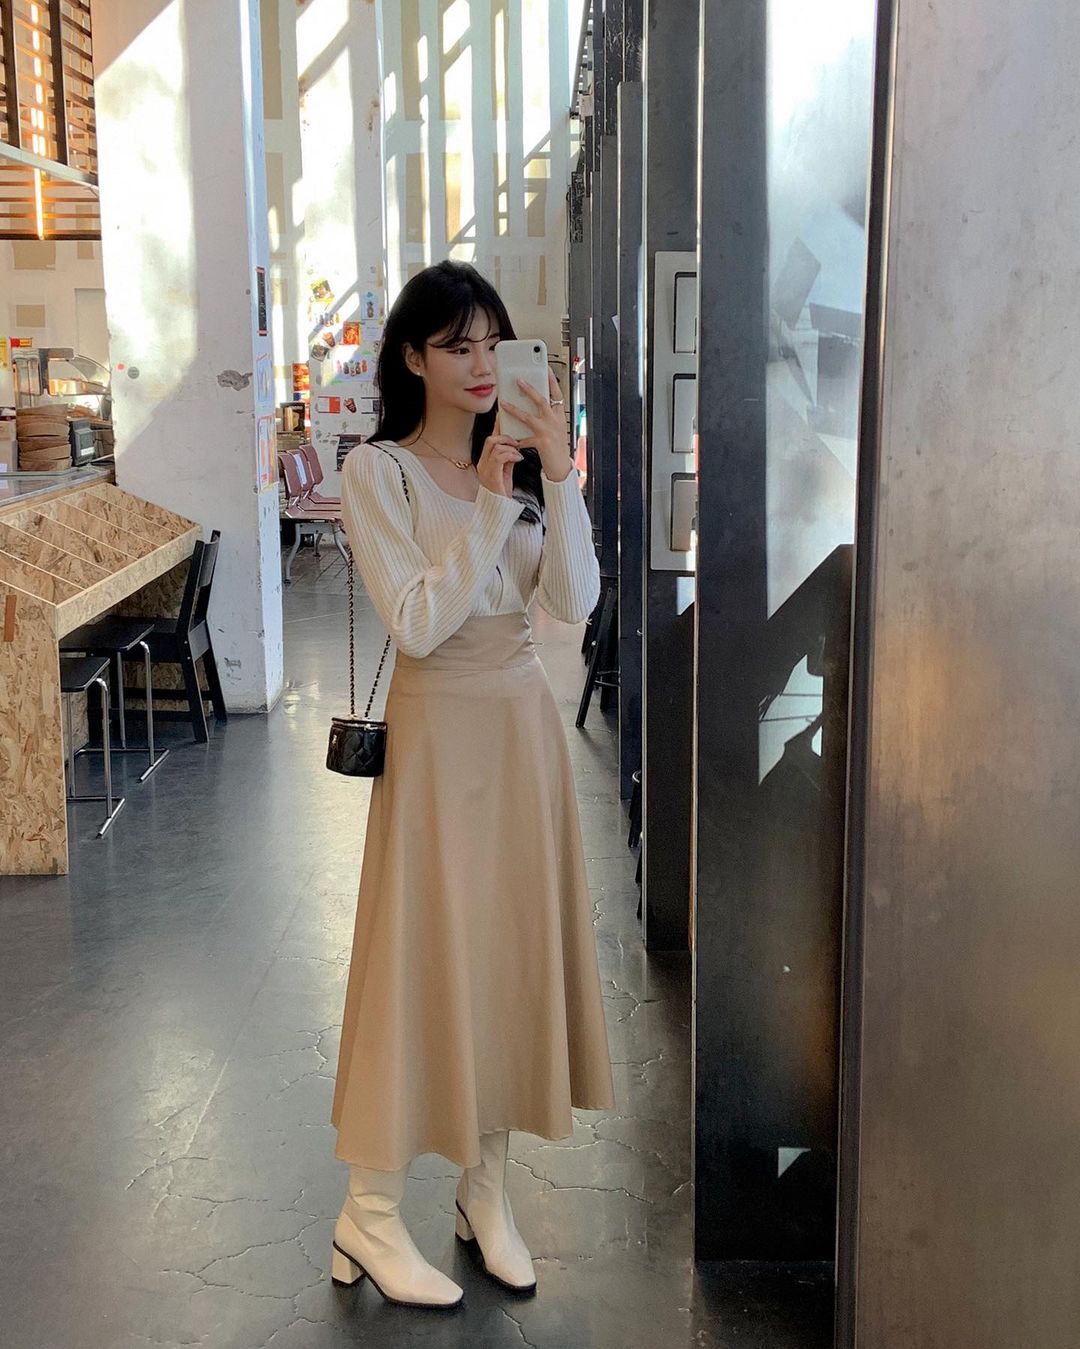 20 Các mẫu váy đẹp Hàn Quốc 2018 được nhiều người yêu thích nhất